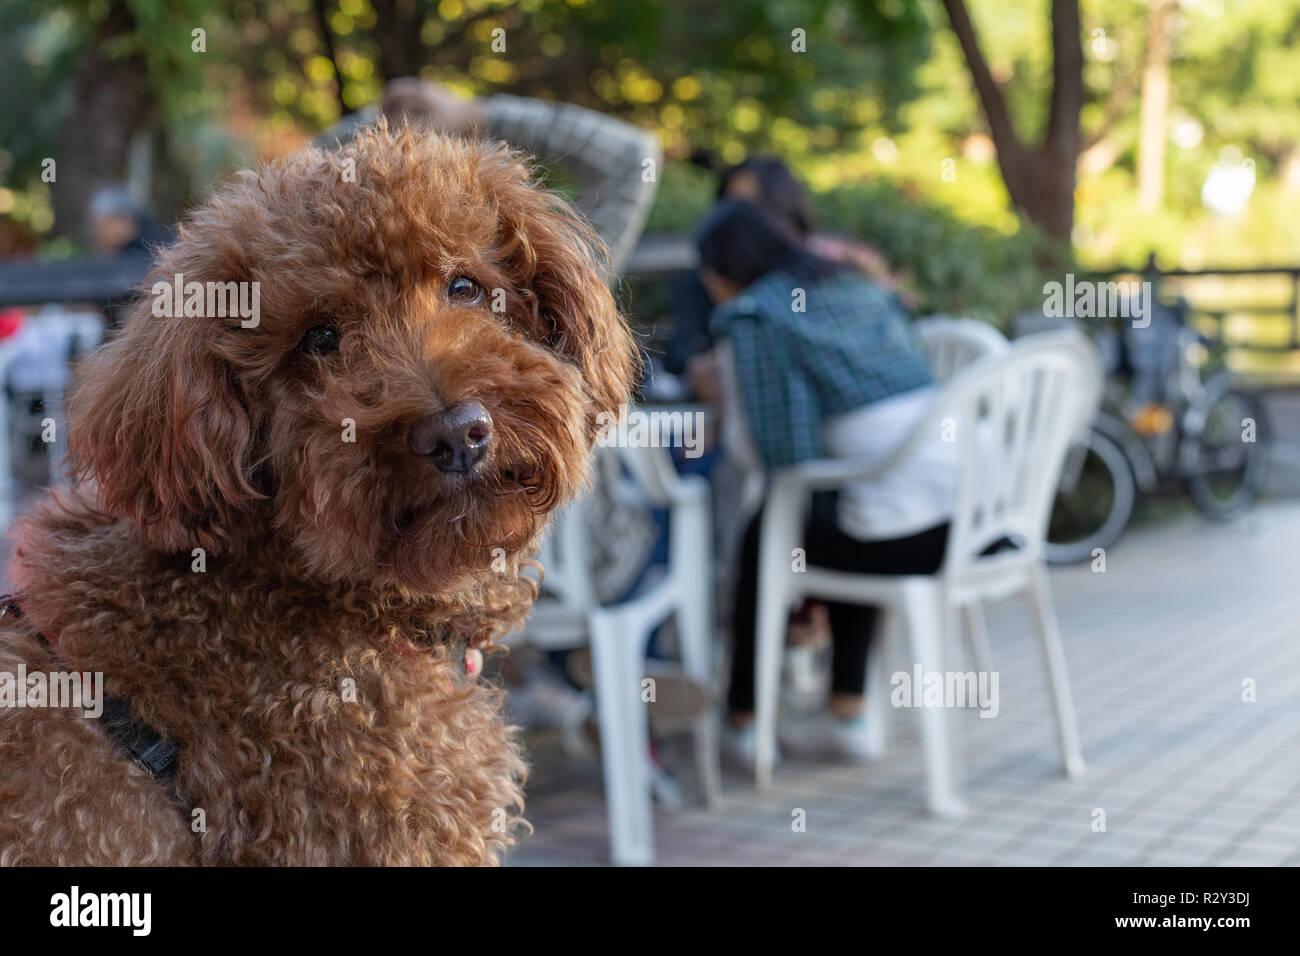 Ritratto di barboncino marrone in un outdoor cafe guardando dritto verso la fotocamera Foto Stock